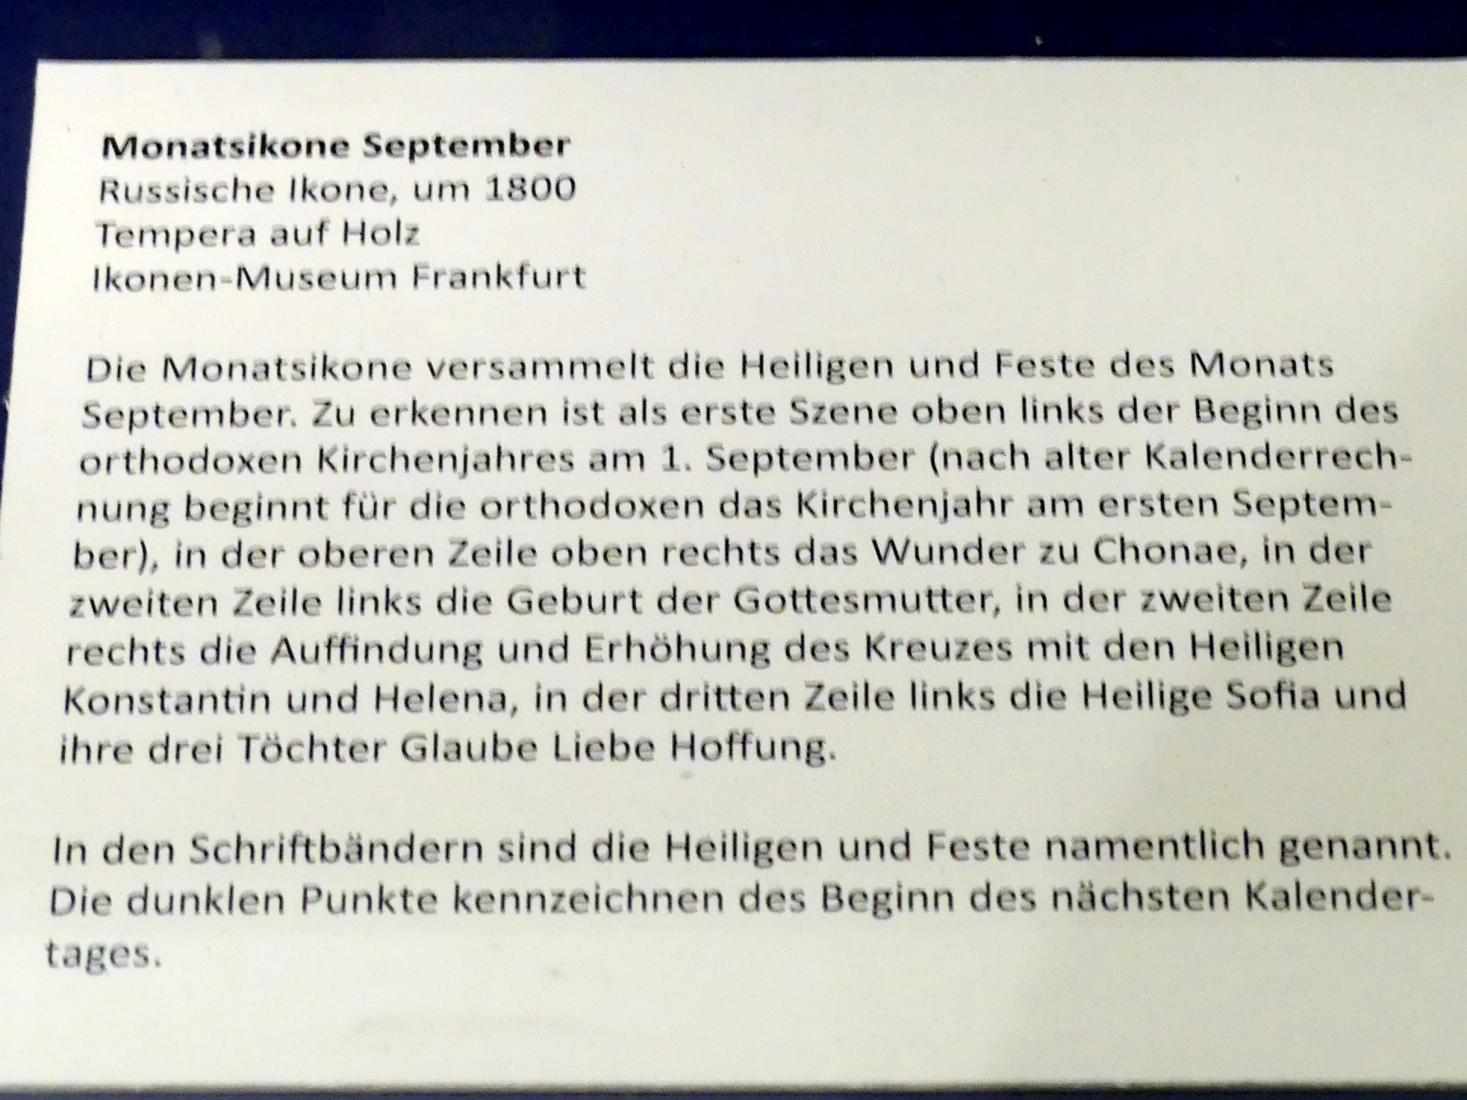 Monatsikone September, Frankfurt am Main, Ikonen-Museum, Obergeschoss, um 1800, Bild 2/2